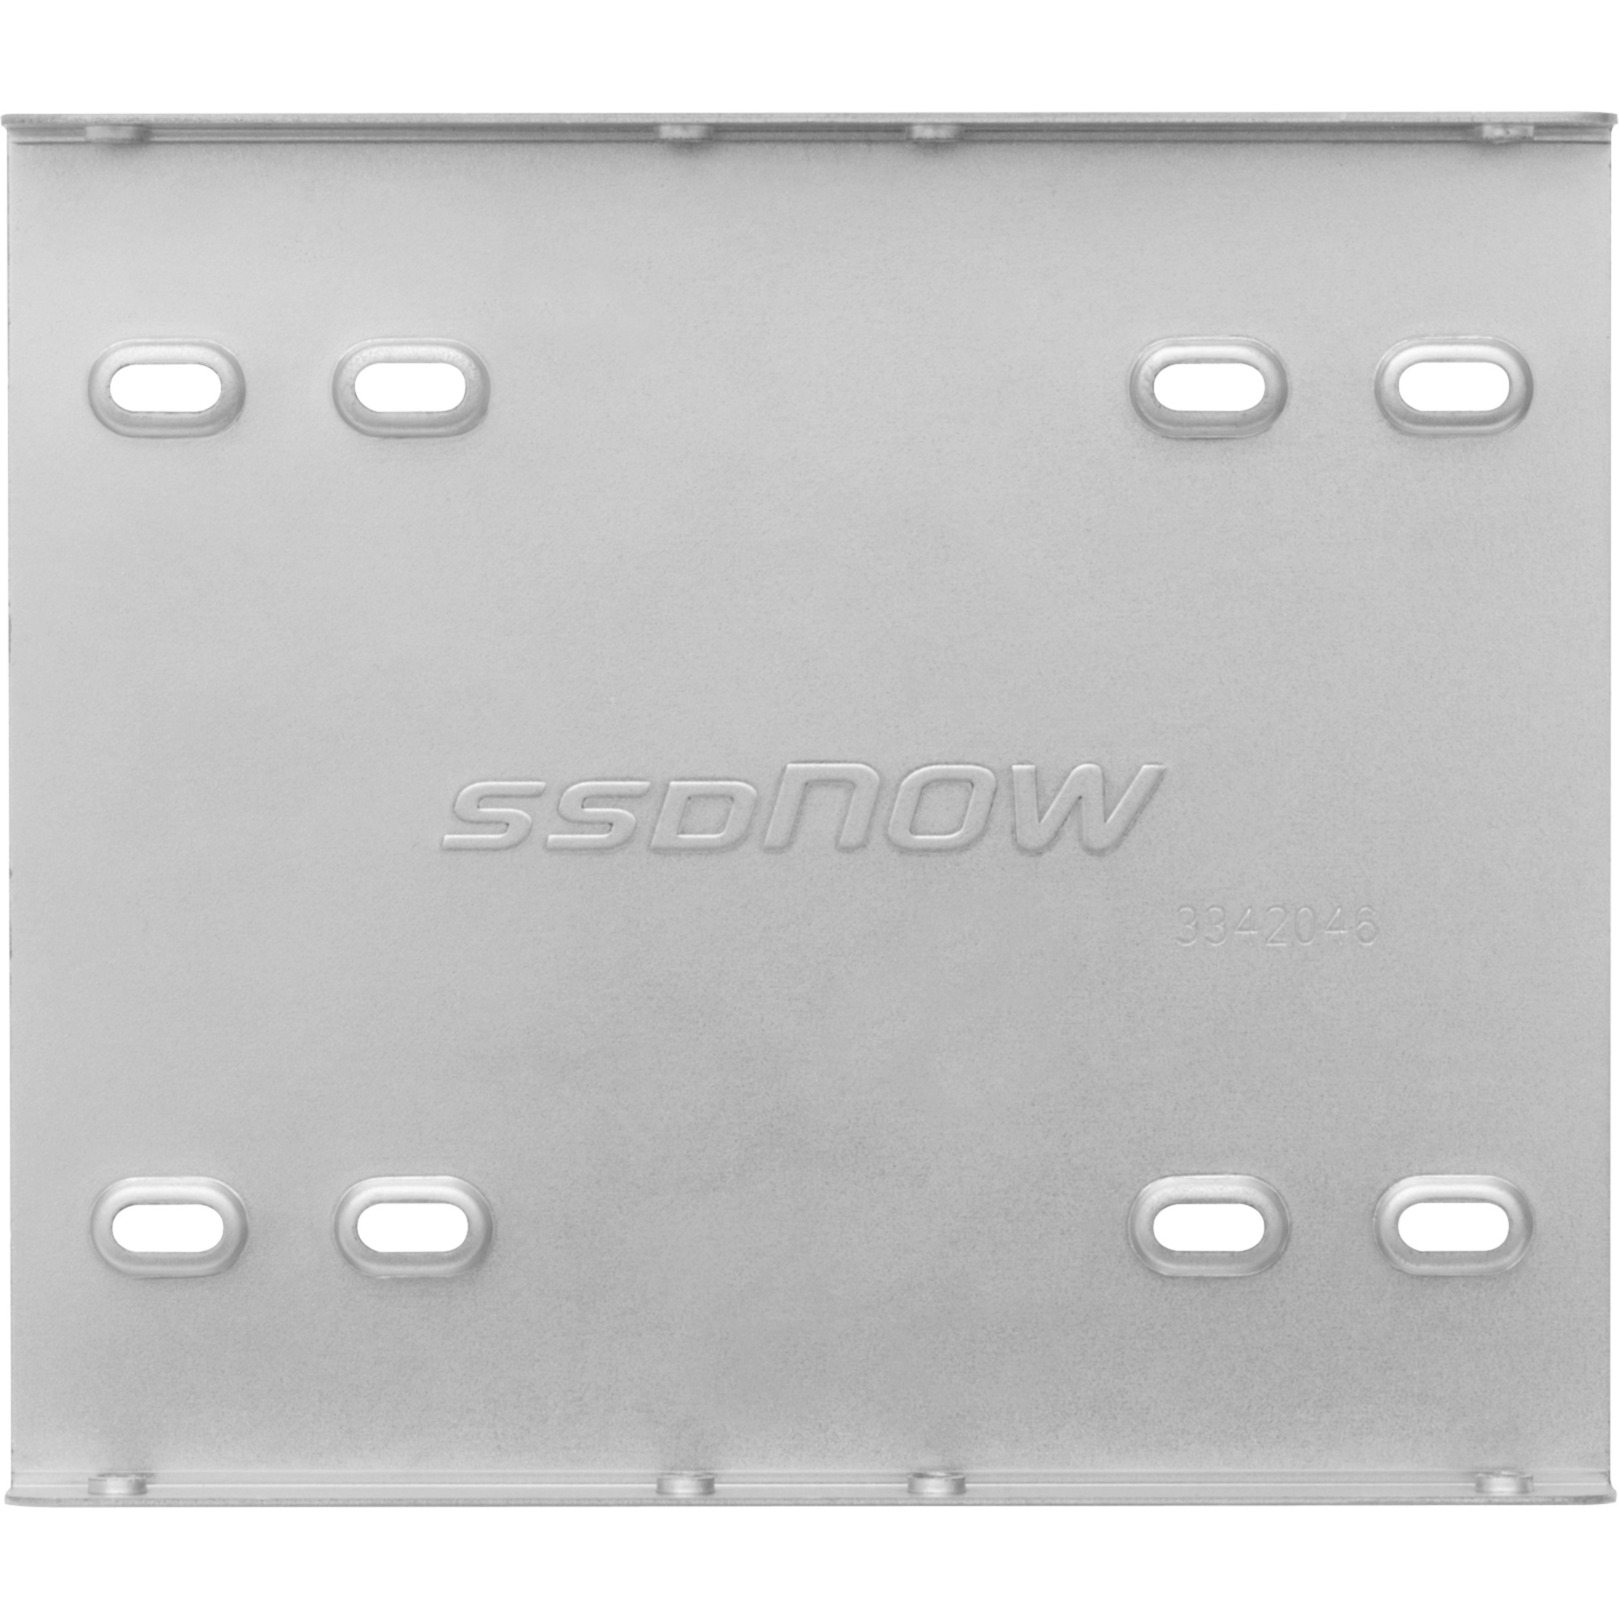 SSD Bracket/Screw 2.5 - 3.5", Einbaurahmen von Kingston